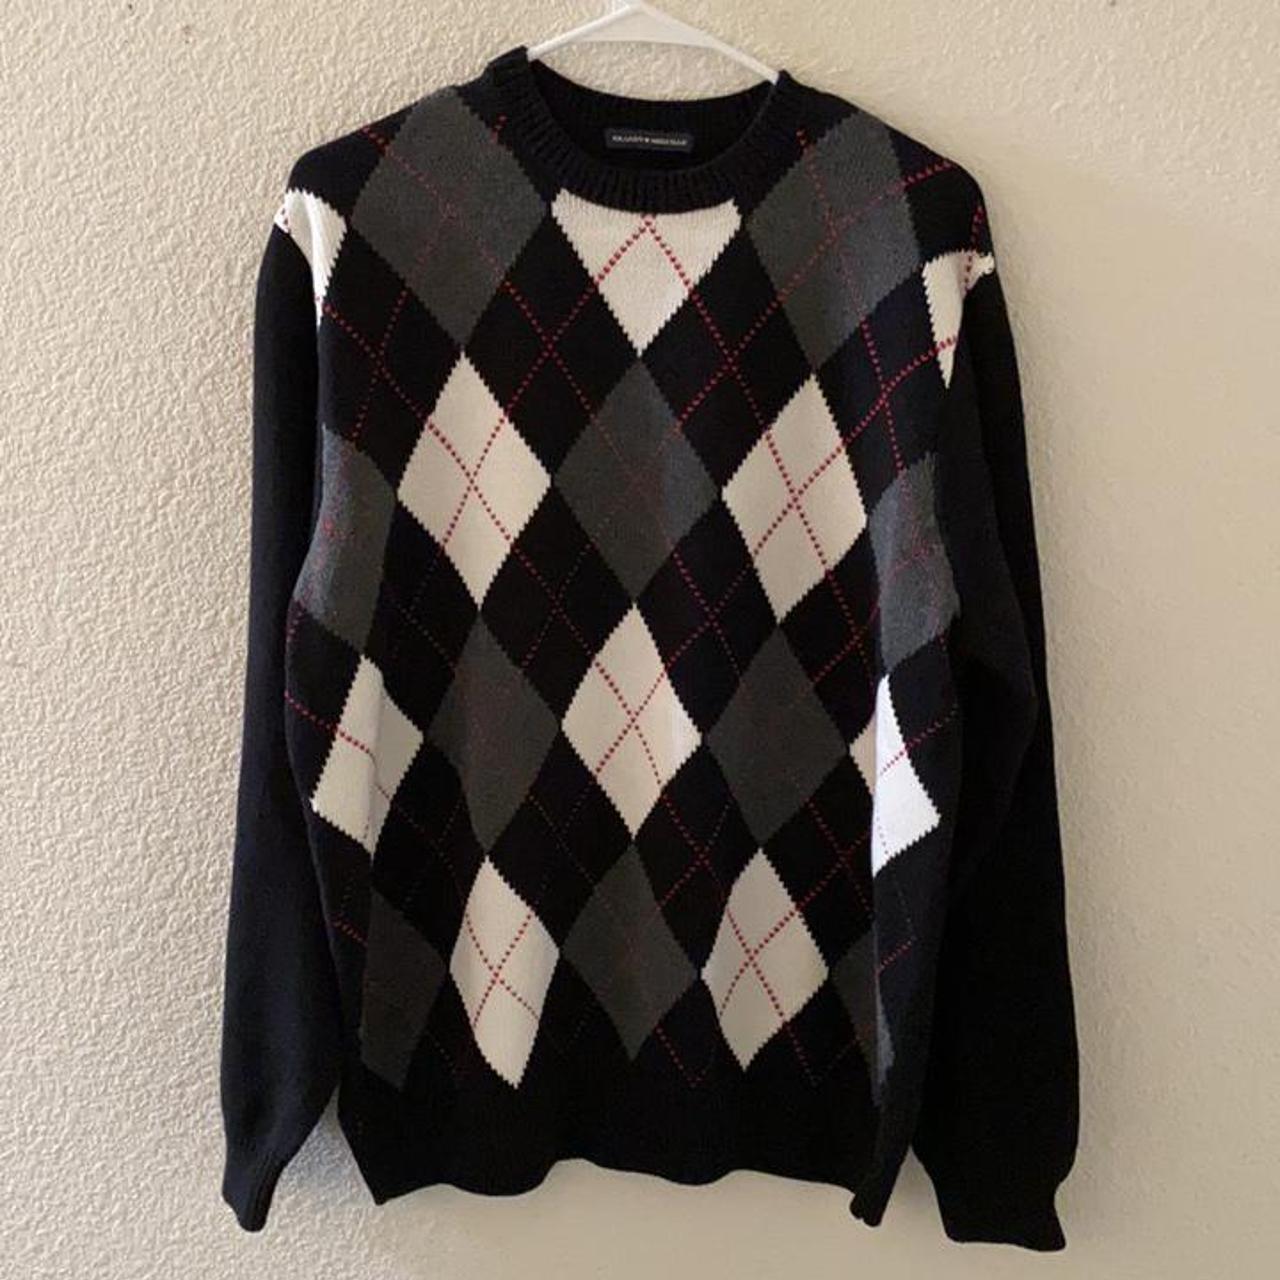 Brandy Melville Brianna argyle sweater #N#Brand new... - Depop